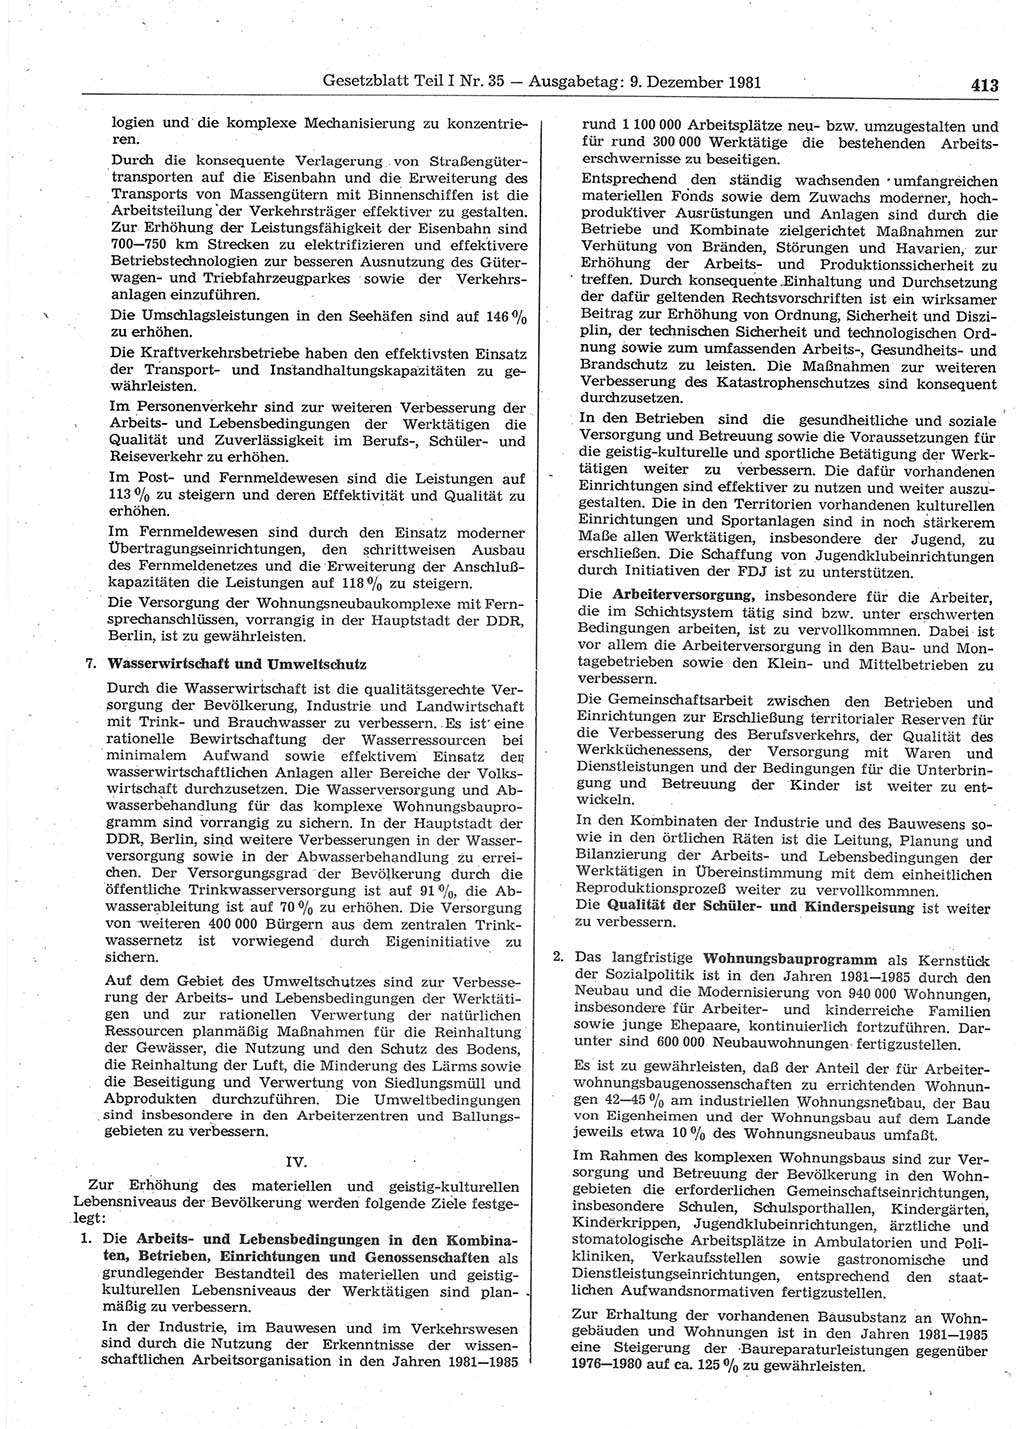 Gesetzblatt (GBl.) der Deutschen Demokratischen Republik (DDR) Teil Ⅰ 1981, Seite 413 (GBl. DDR Ⅰ 1981, S. 413)